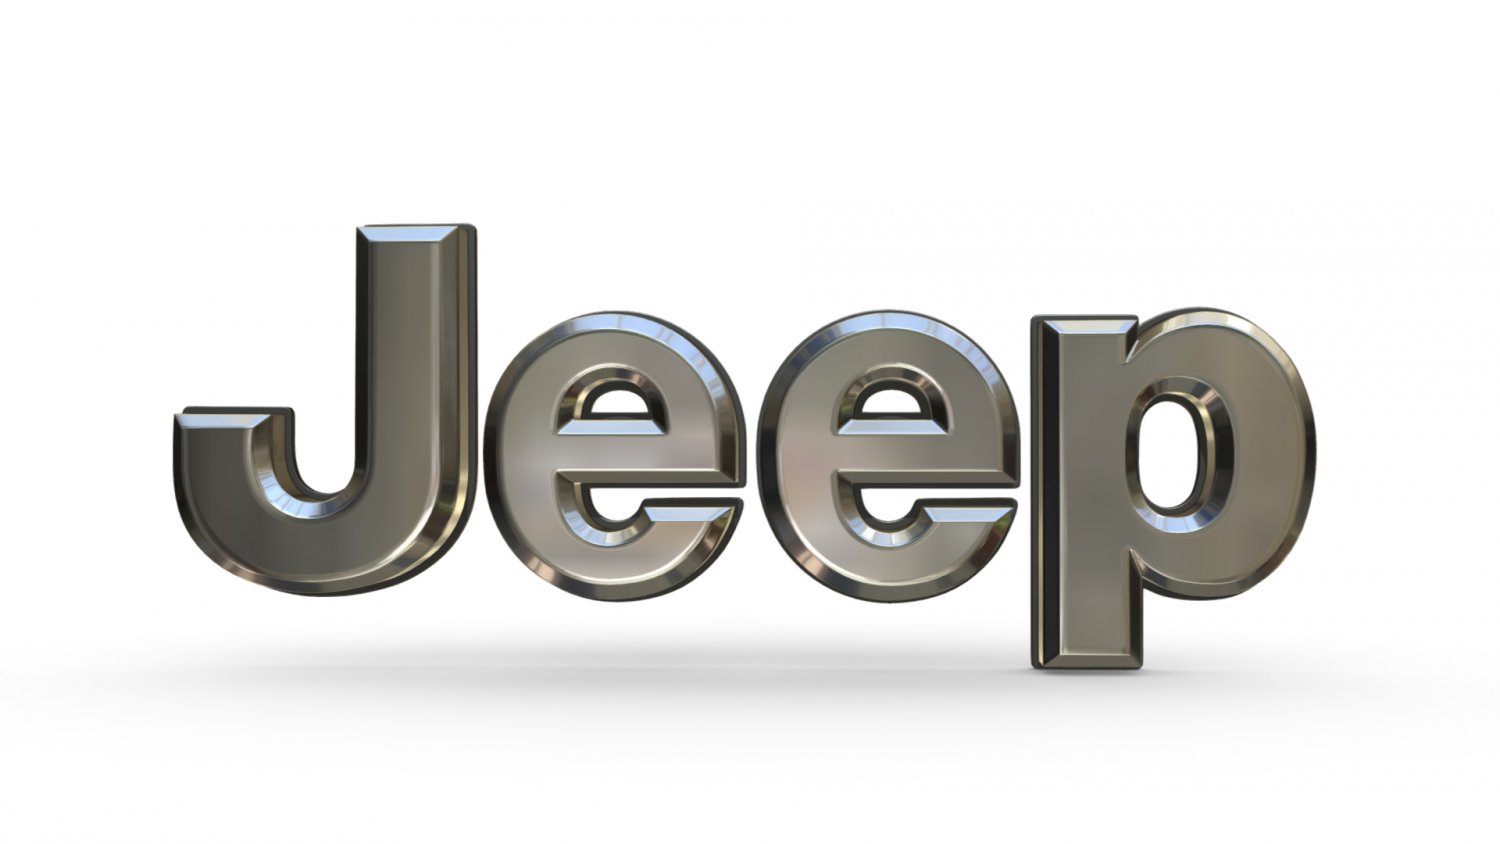 jeep_logo_3d_model_c4d_max_obj_fbx_ma_lwo_3ds_3dm_stl_3028626_o